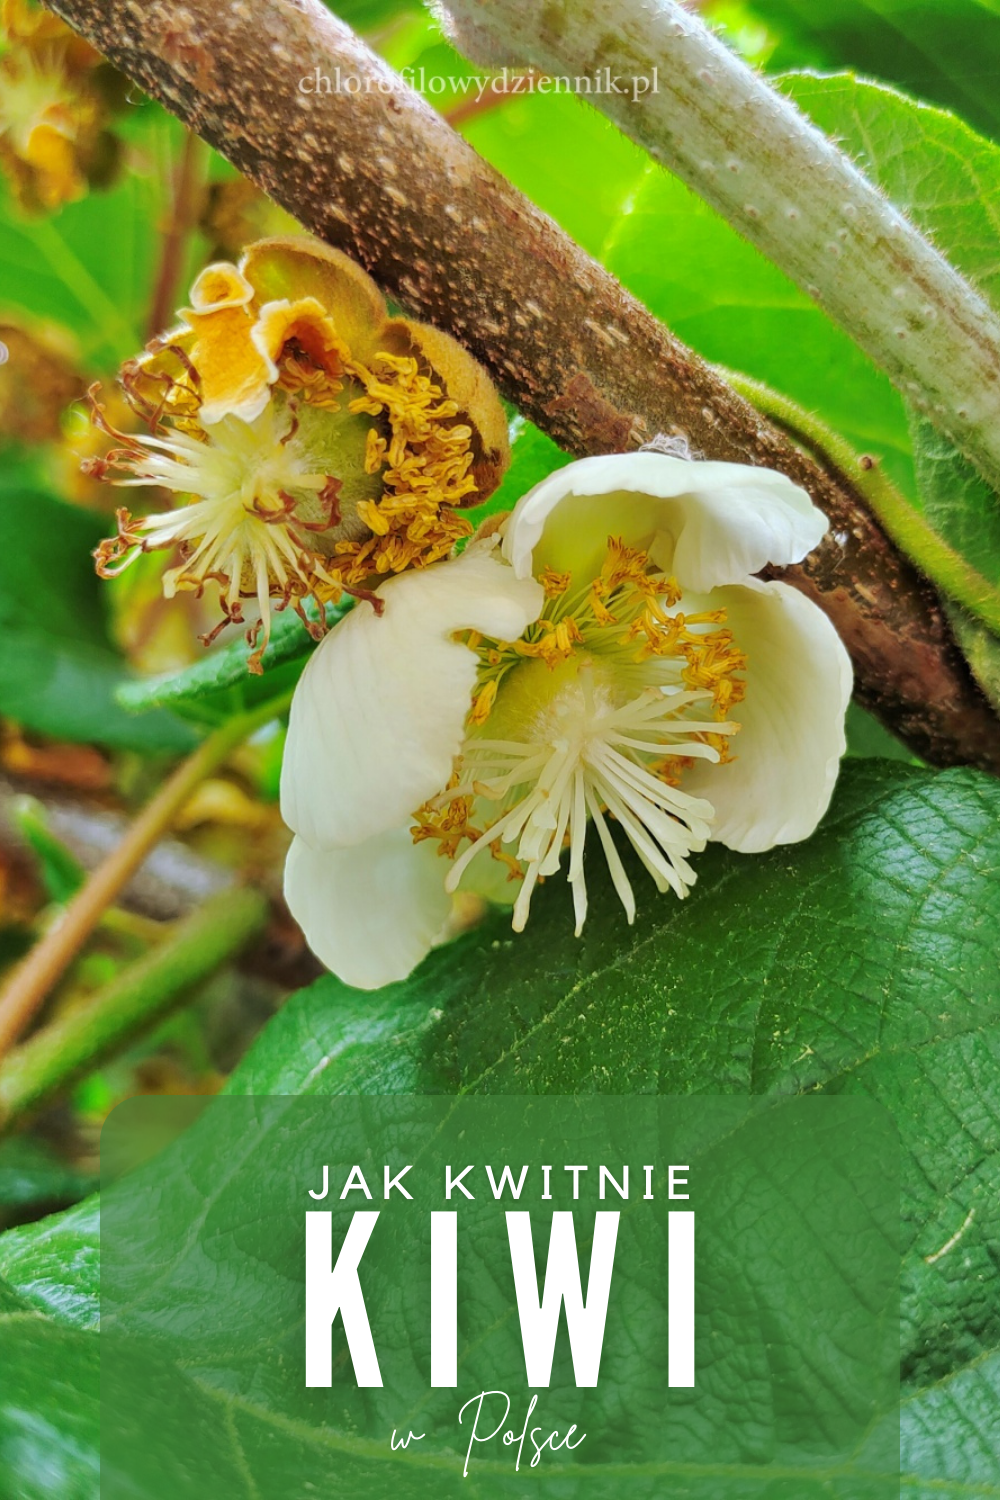 Actinidia chinensis aktinidia chińska kiwi kwiaty kwitnienie w Polsce czy można uprawiać w gruncie jak rośnie kiwi uprawa zapylanie wyglad pnacza owoc